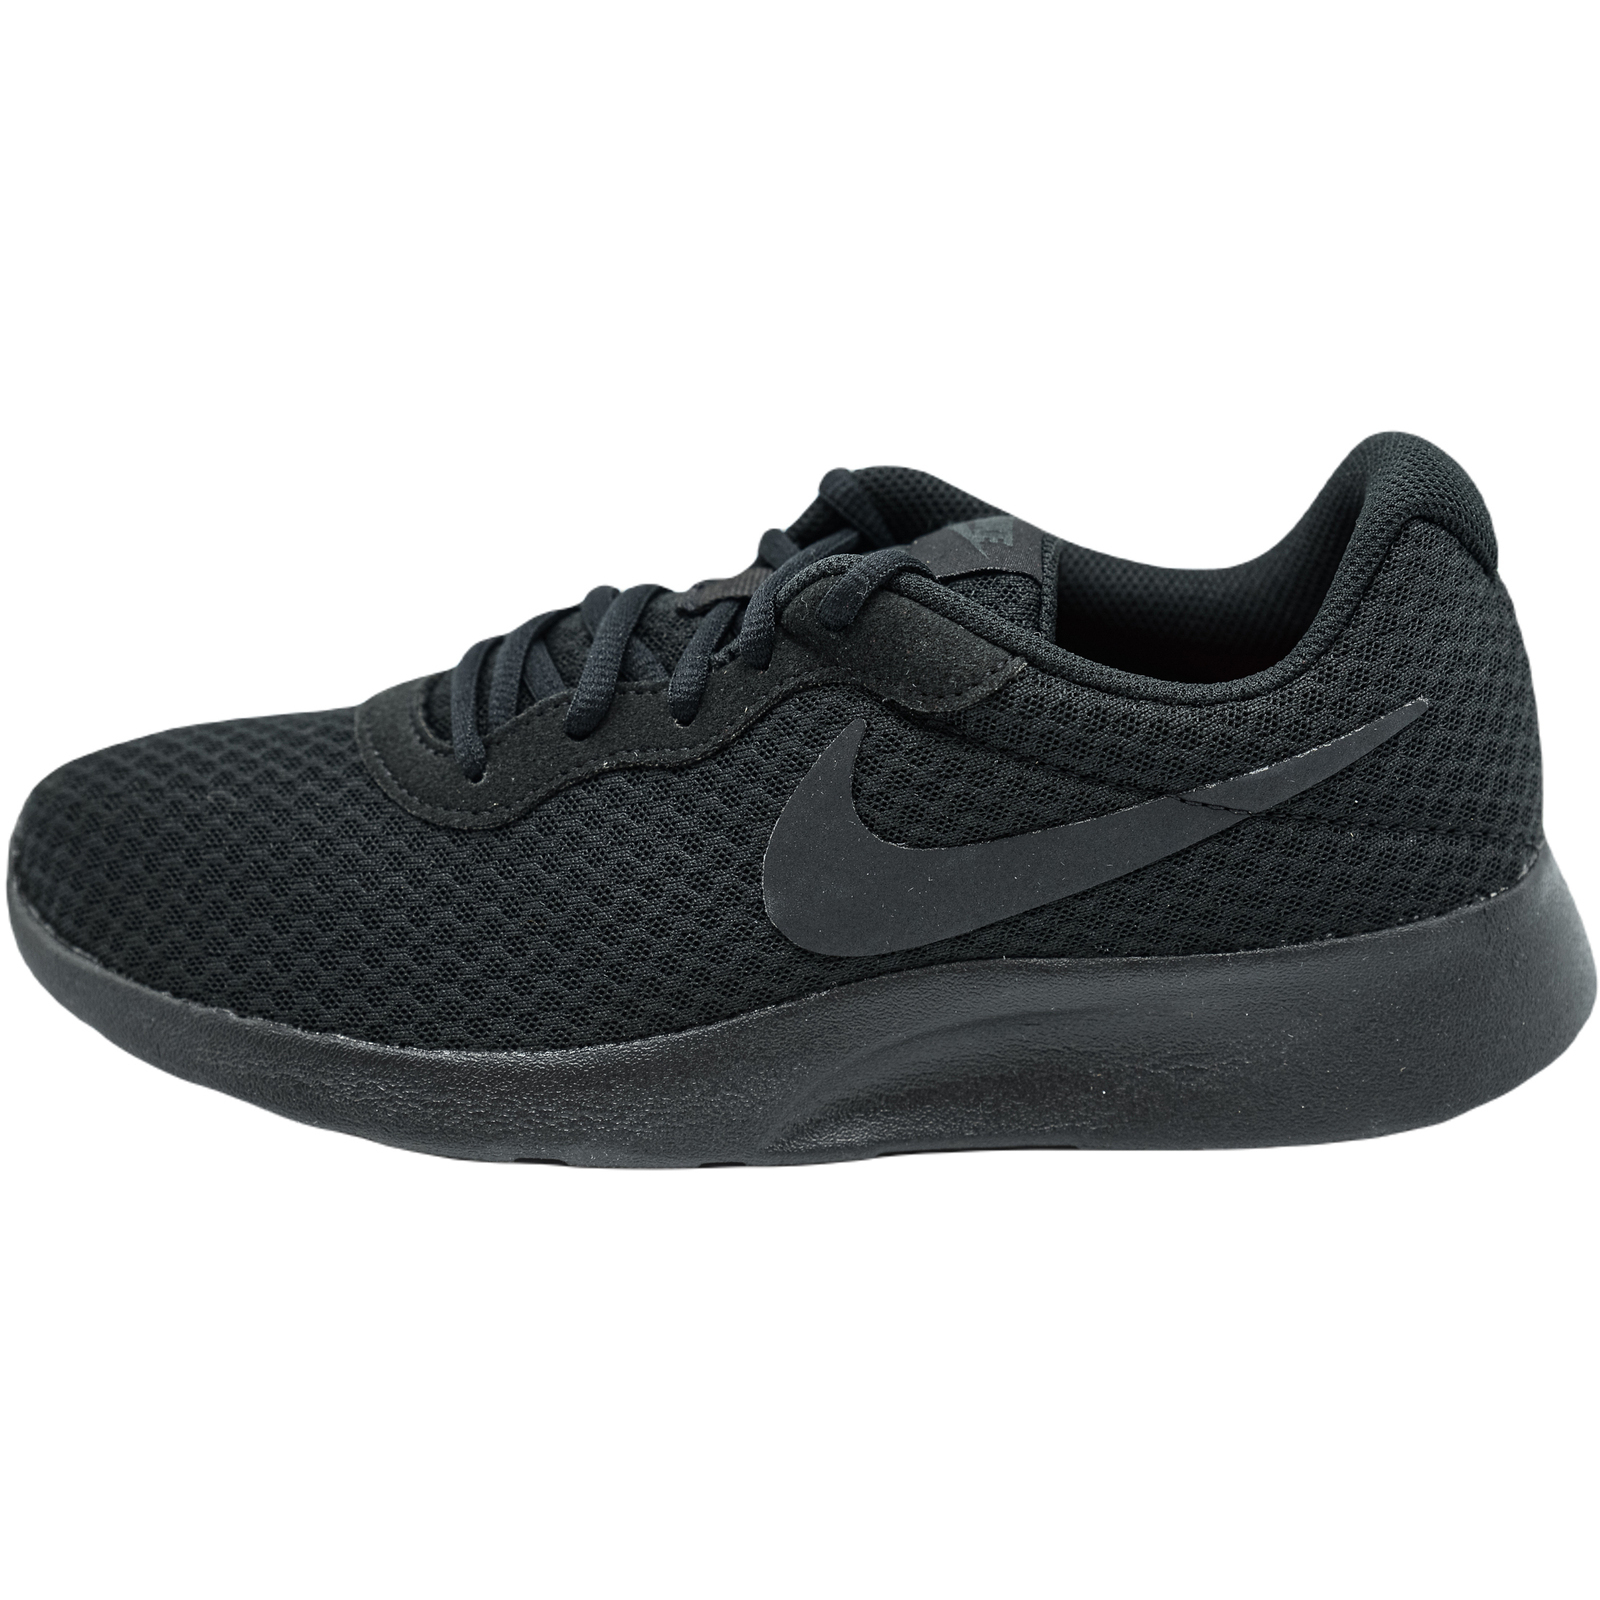 Advance Groping Witty Pantofi sport, Adidasi barbati Nike Tanjun 812654-001